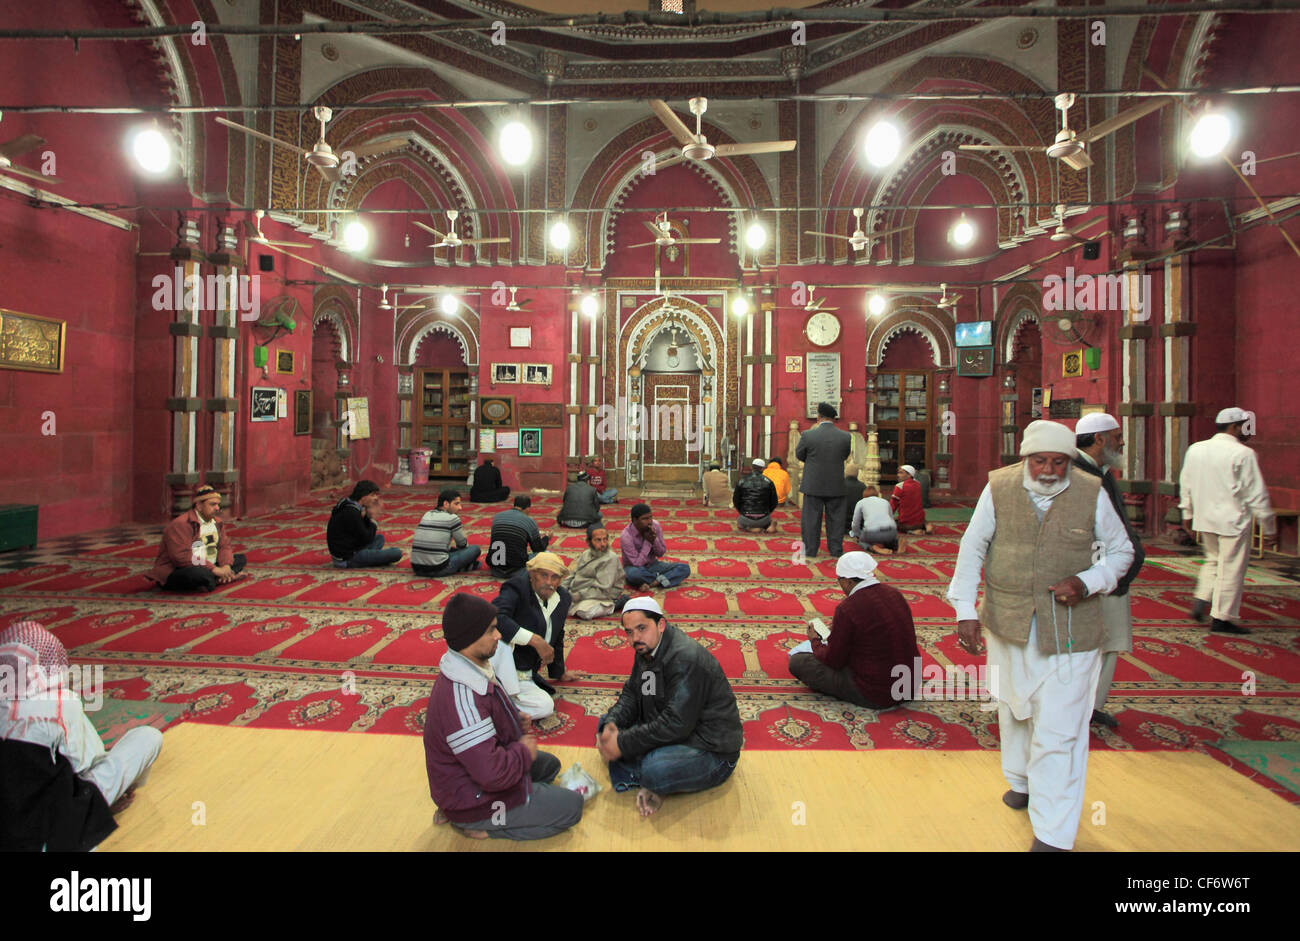 Indien; Delhi; Nizamuddin Chisti; Muslim; Sufi; St.; Schrein; Dargah Hazrat Nizamuddin Aulia; Menschen; Moschee, Stockfoto